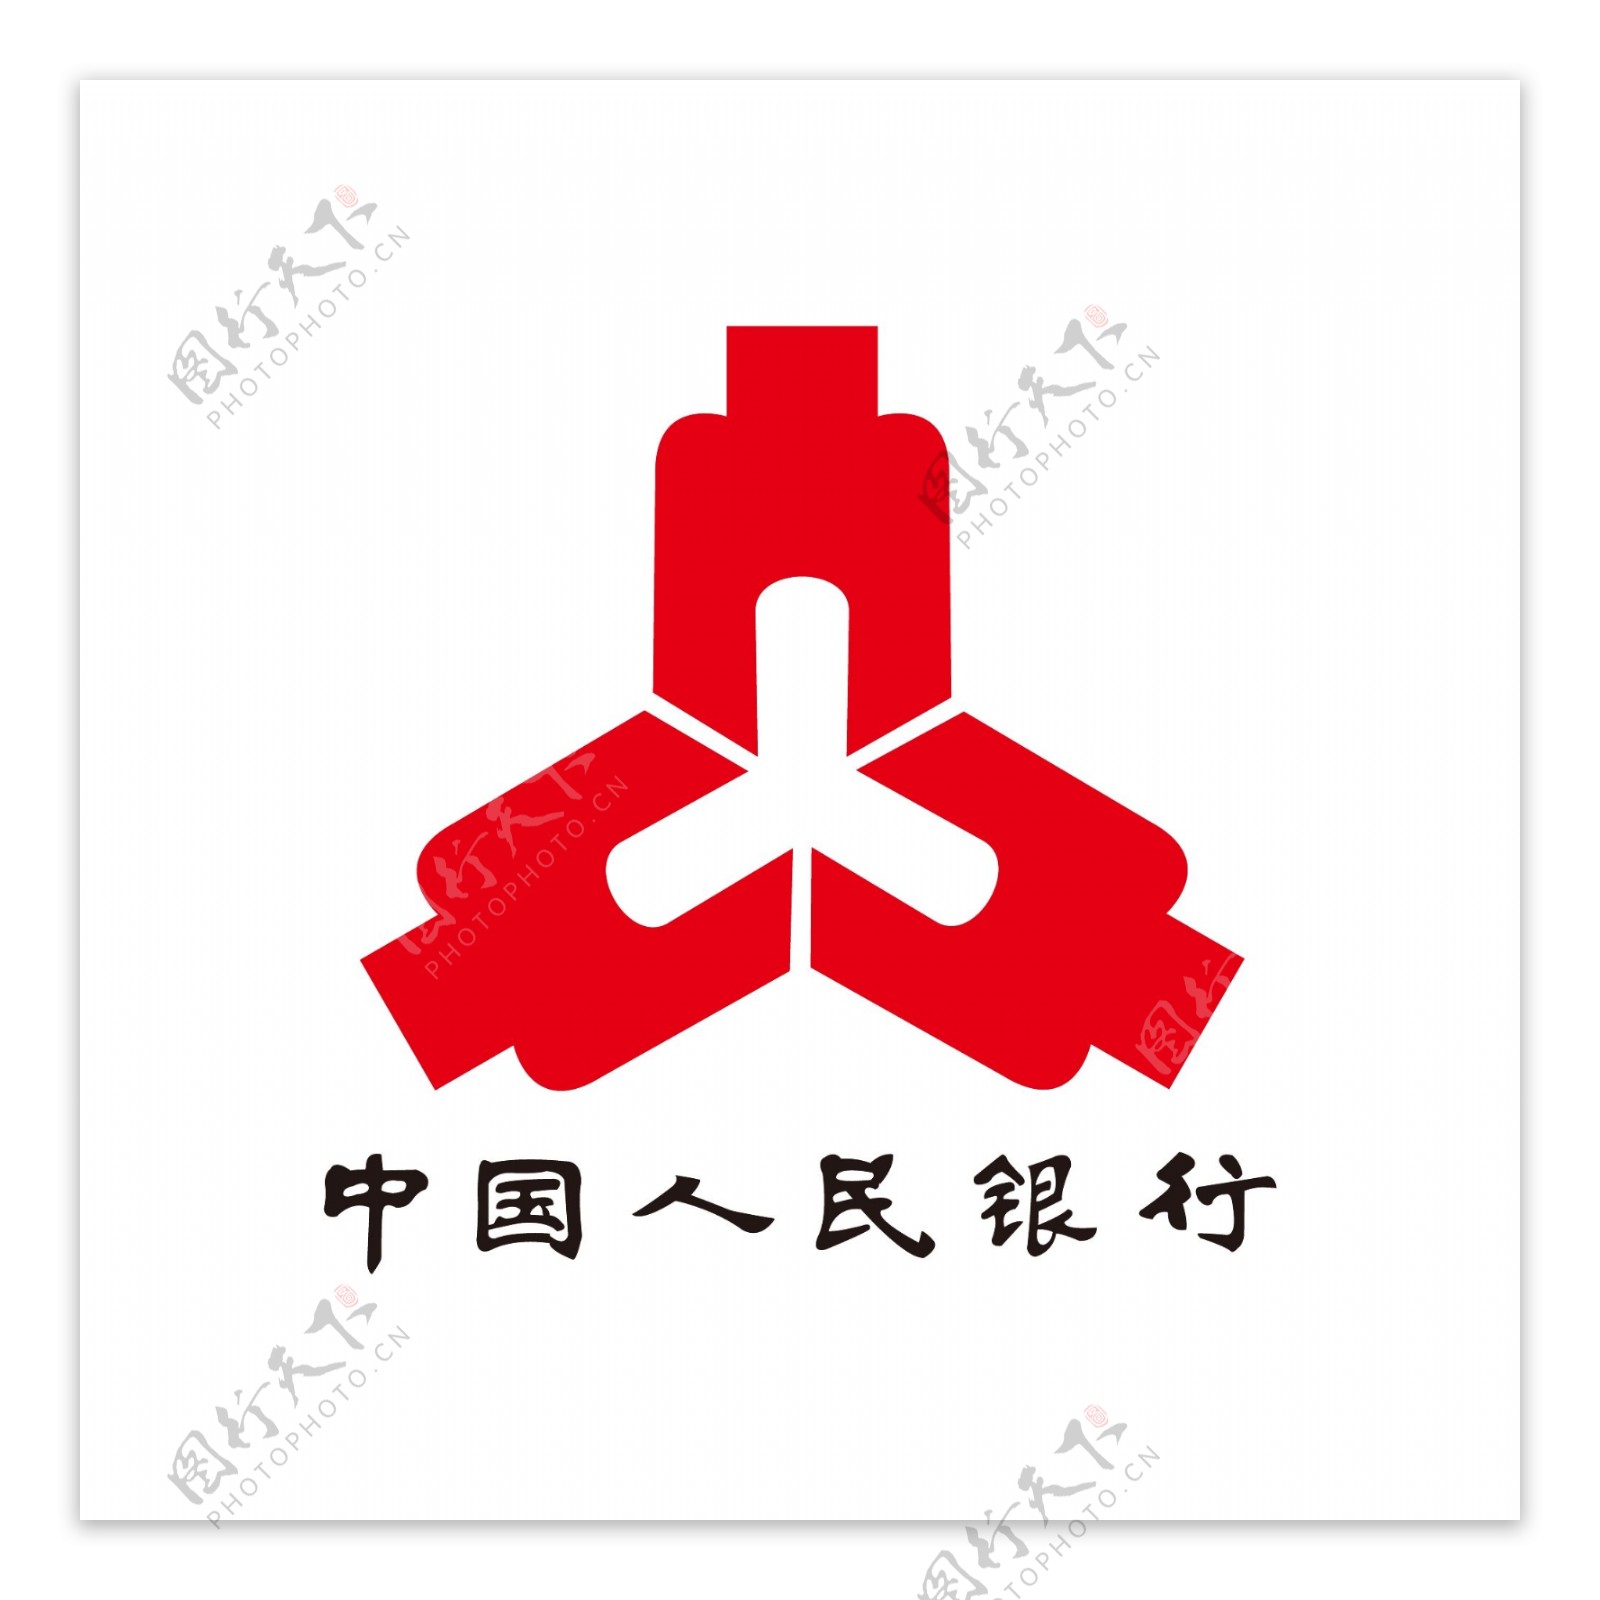 中国人民银行标志